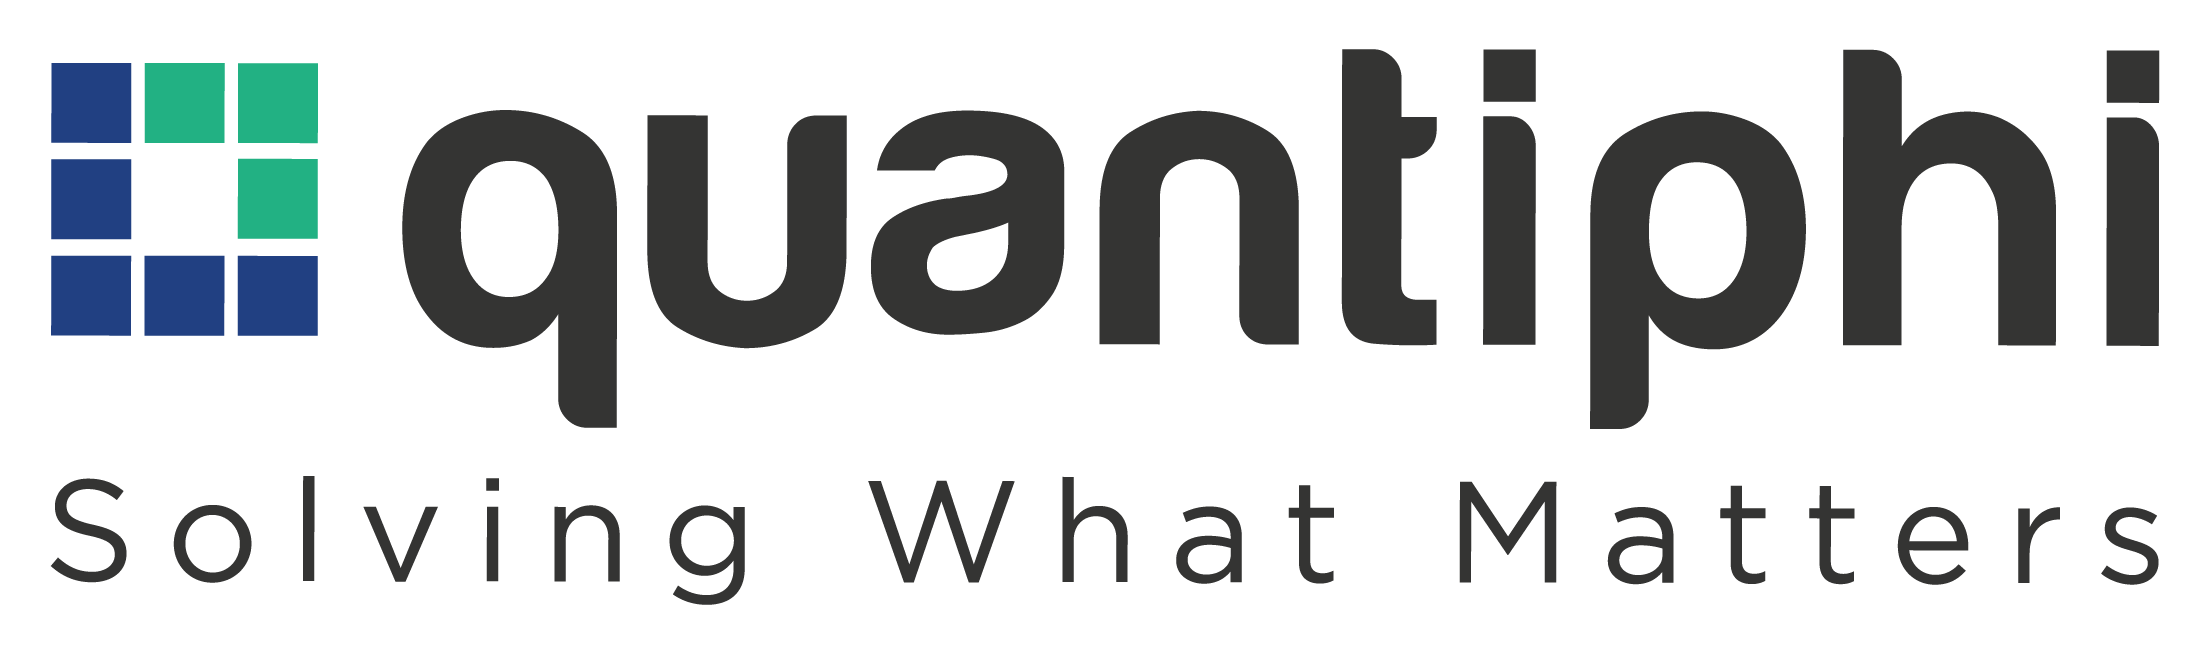 Logotipo da Quantiphi